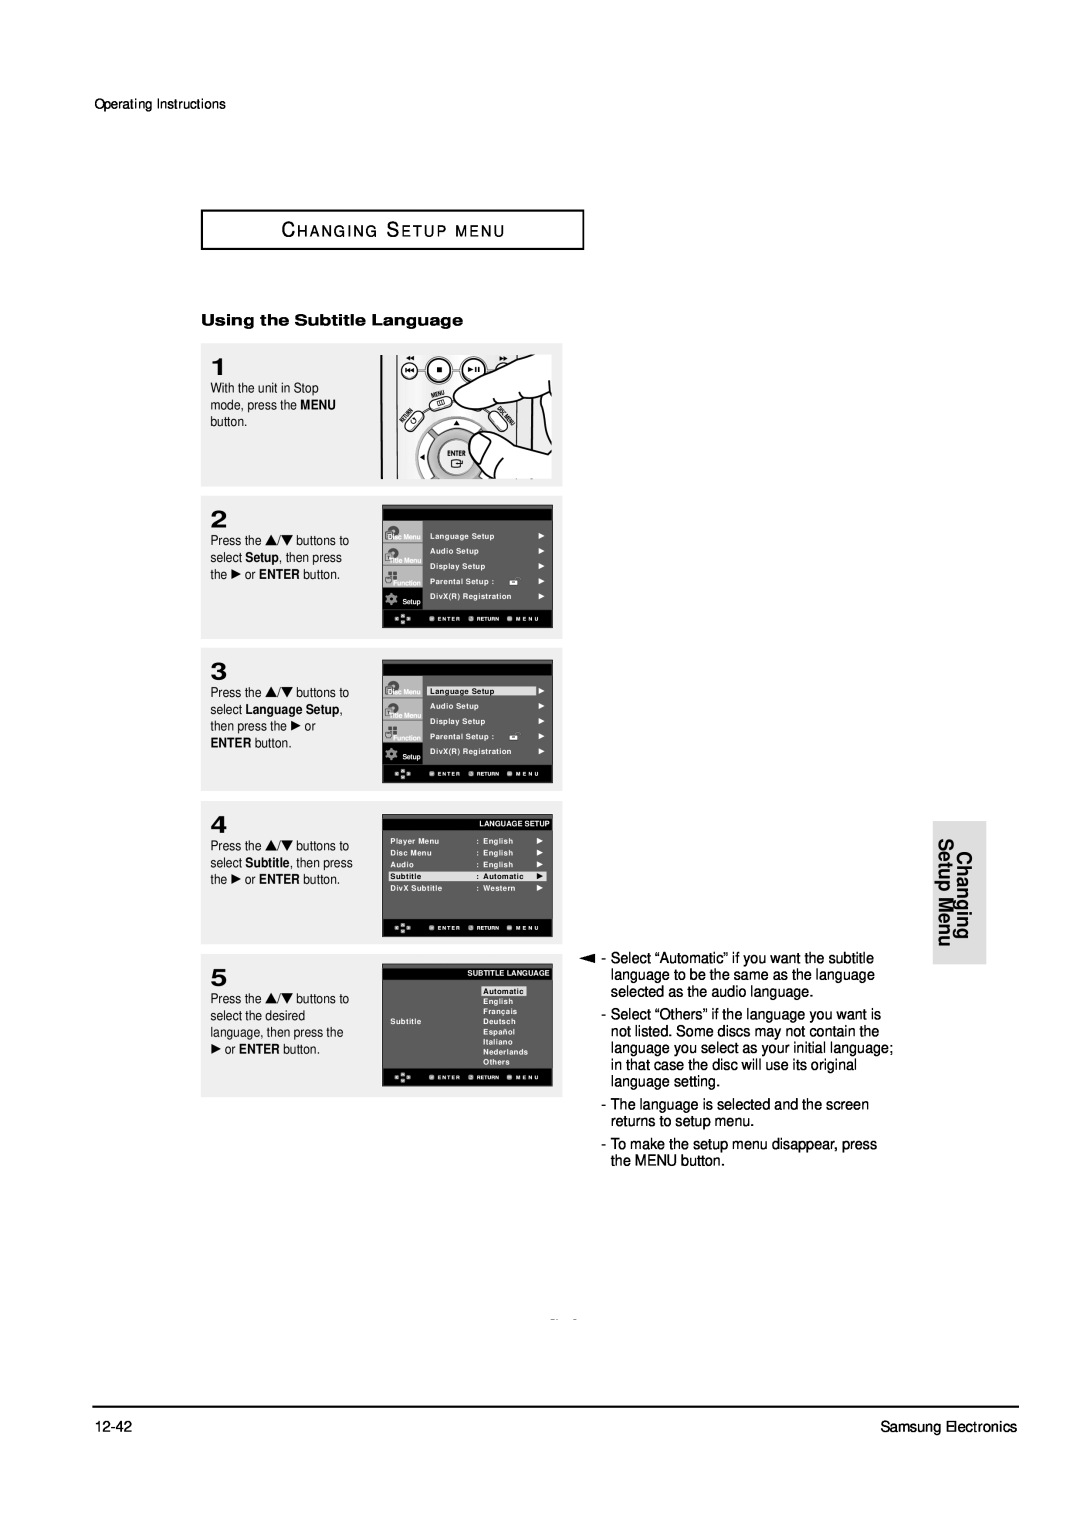 Samsung DVD-P355B/FOU service manual Changing Setup Menu, Operating Instructions, C H A N G I N G S E T U P M E N U, ENG-49 